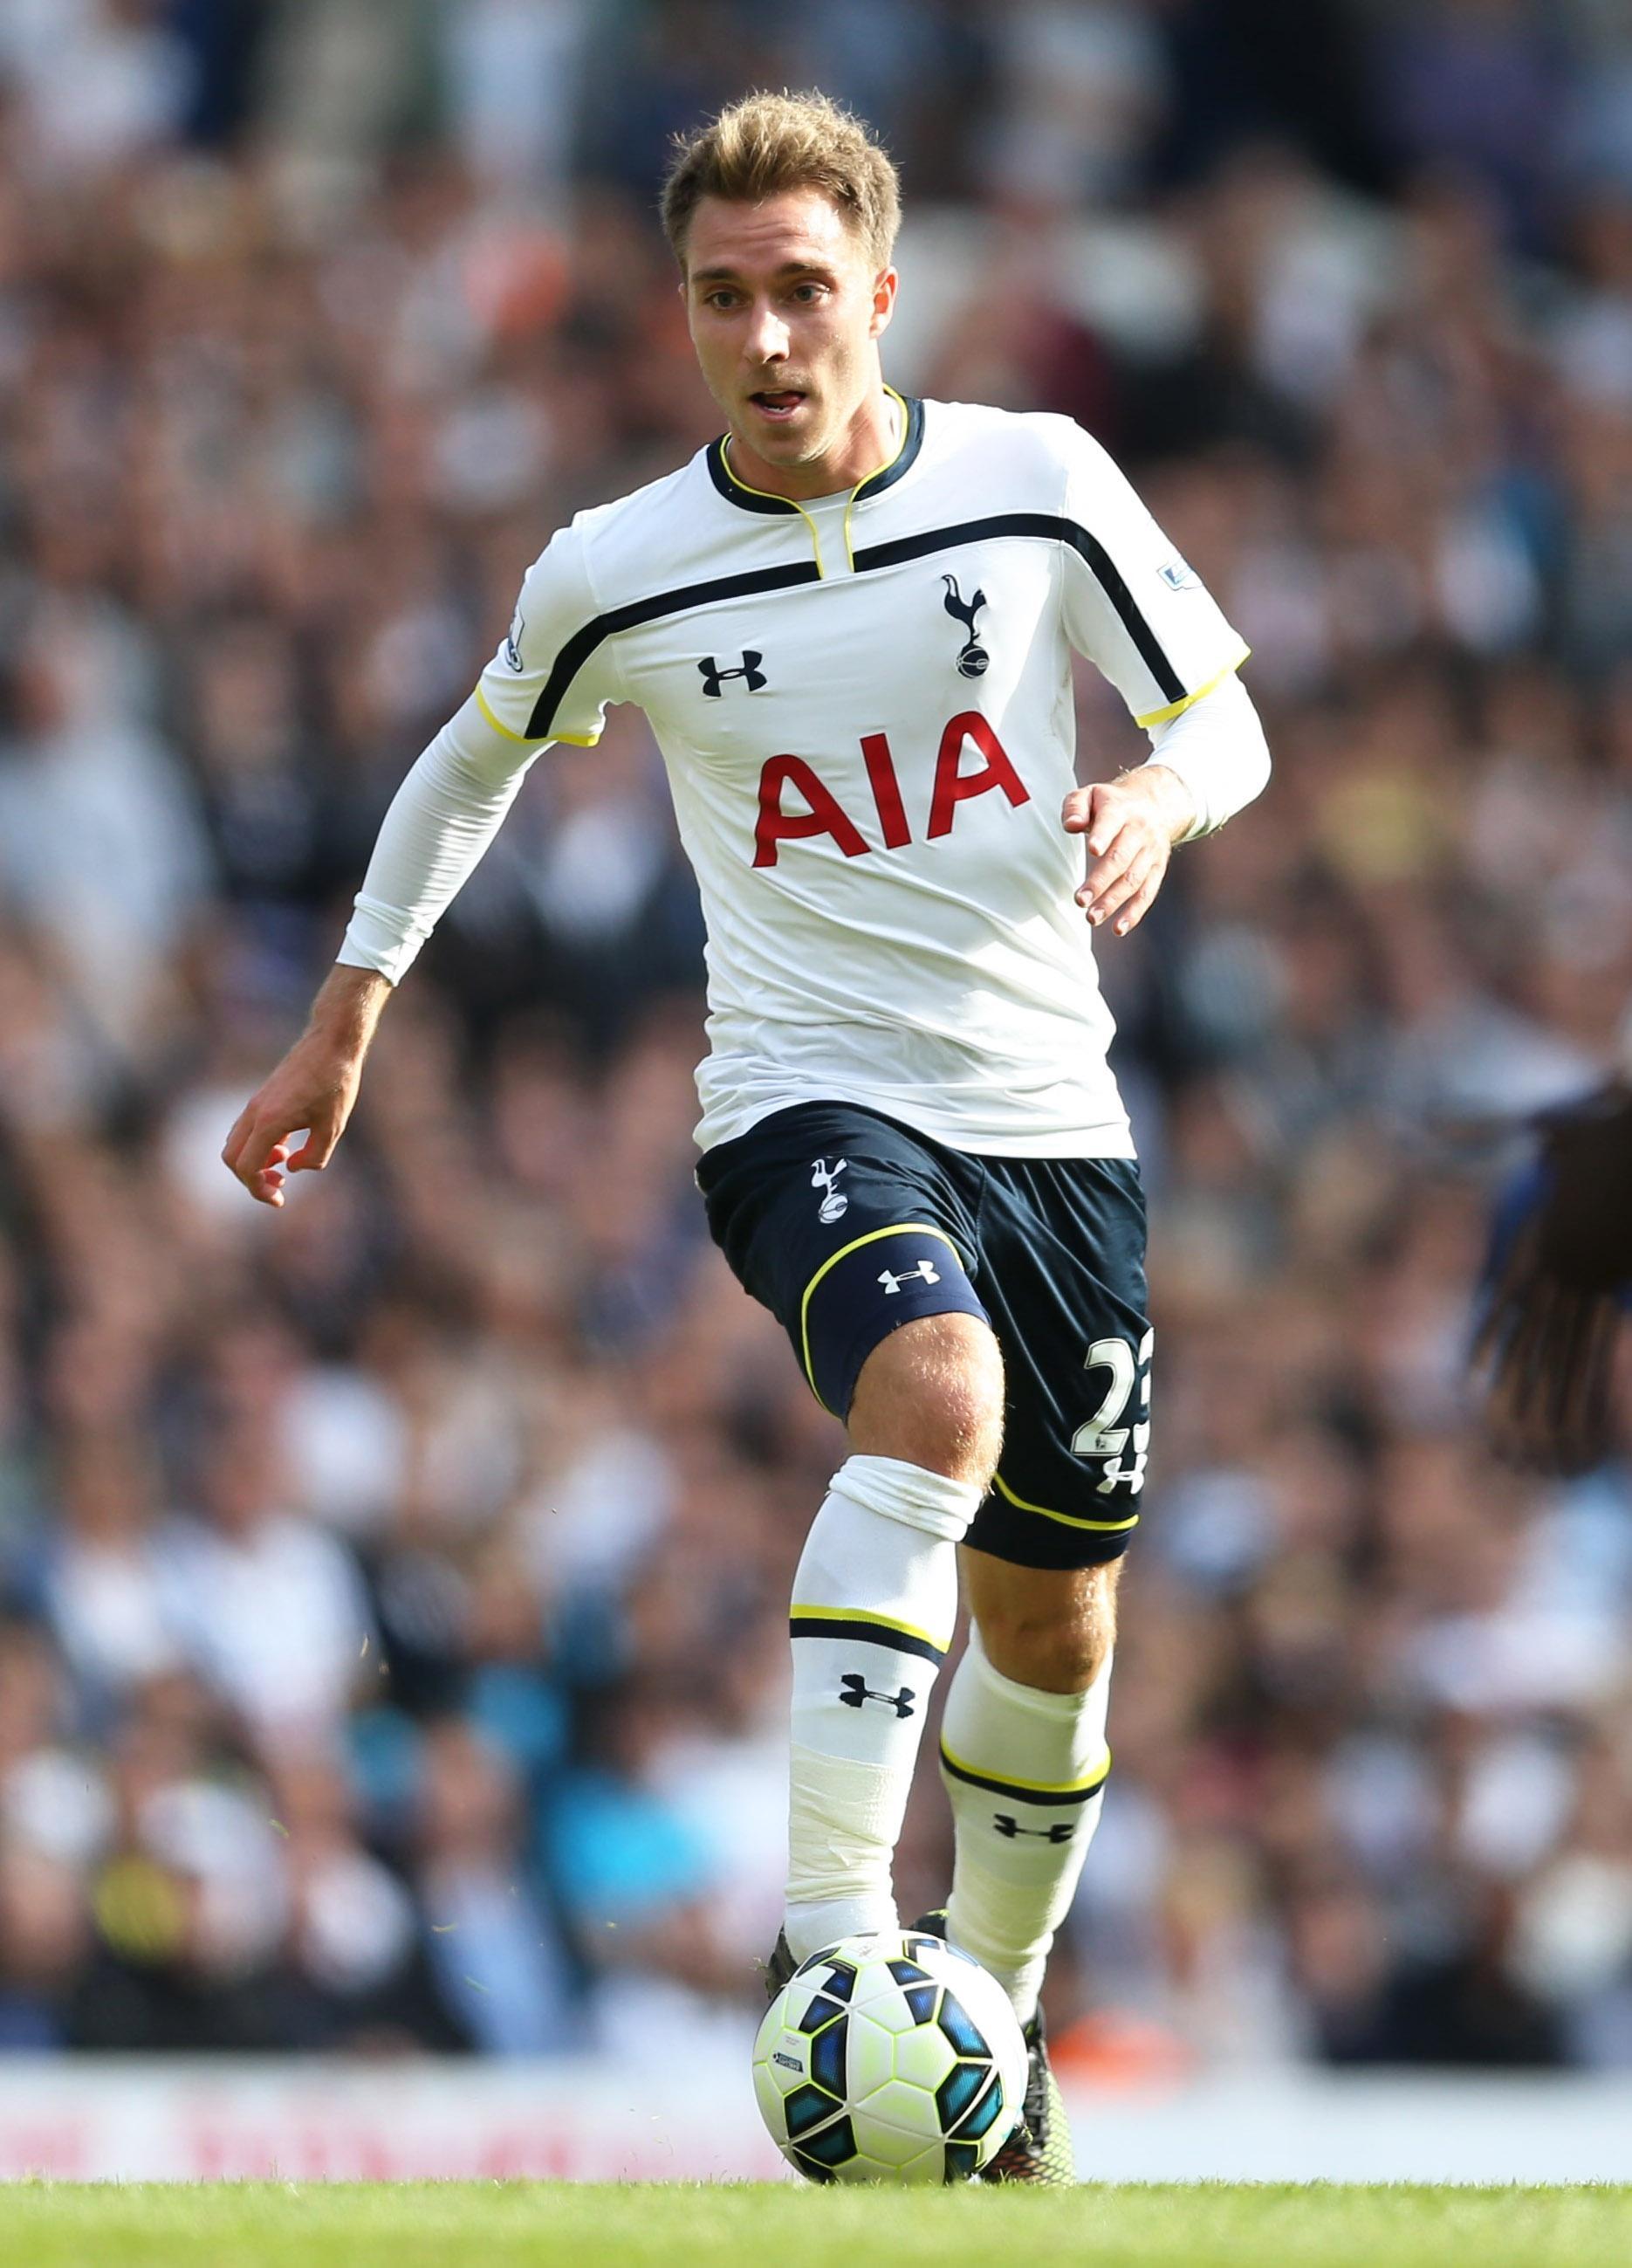 Christian Eriksen of Tottenham Hotspur. Soccer